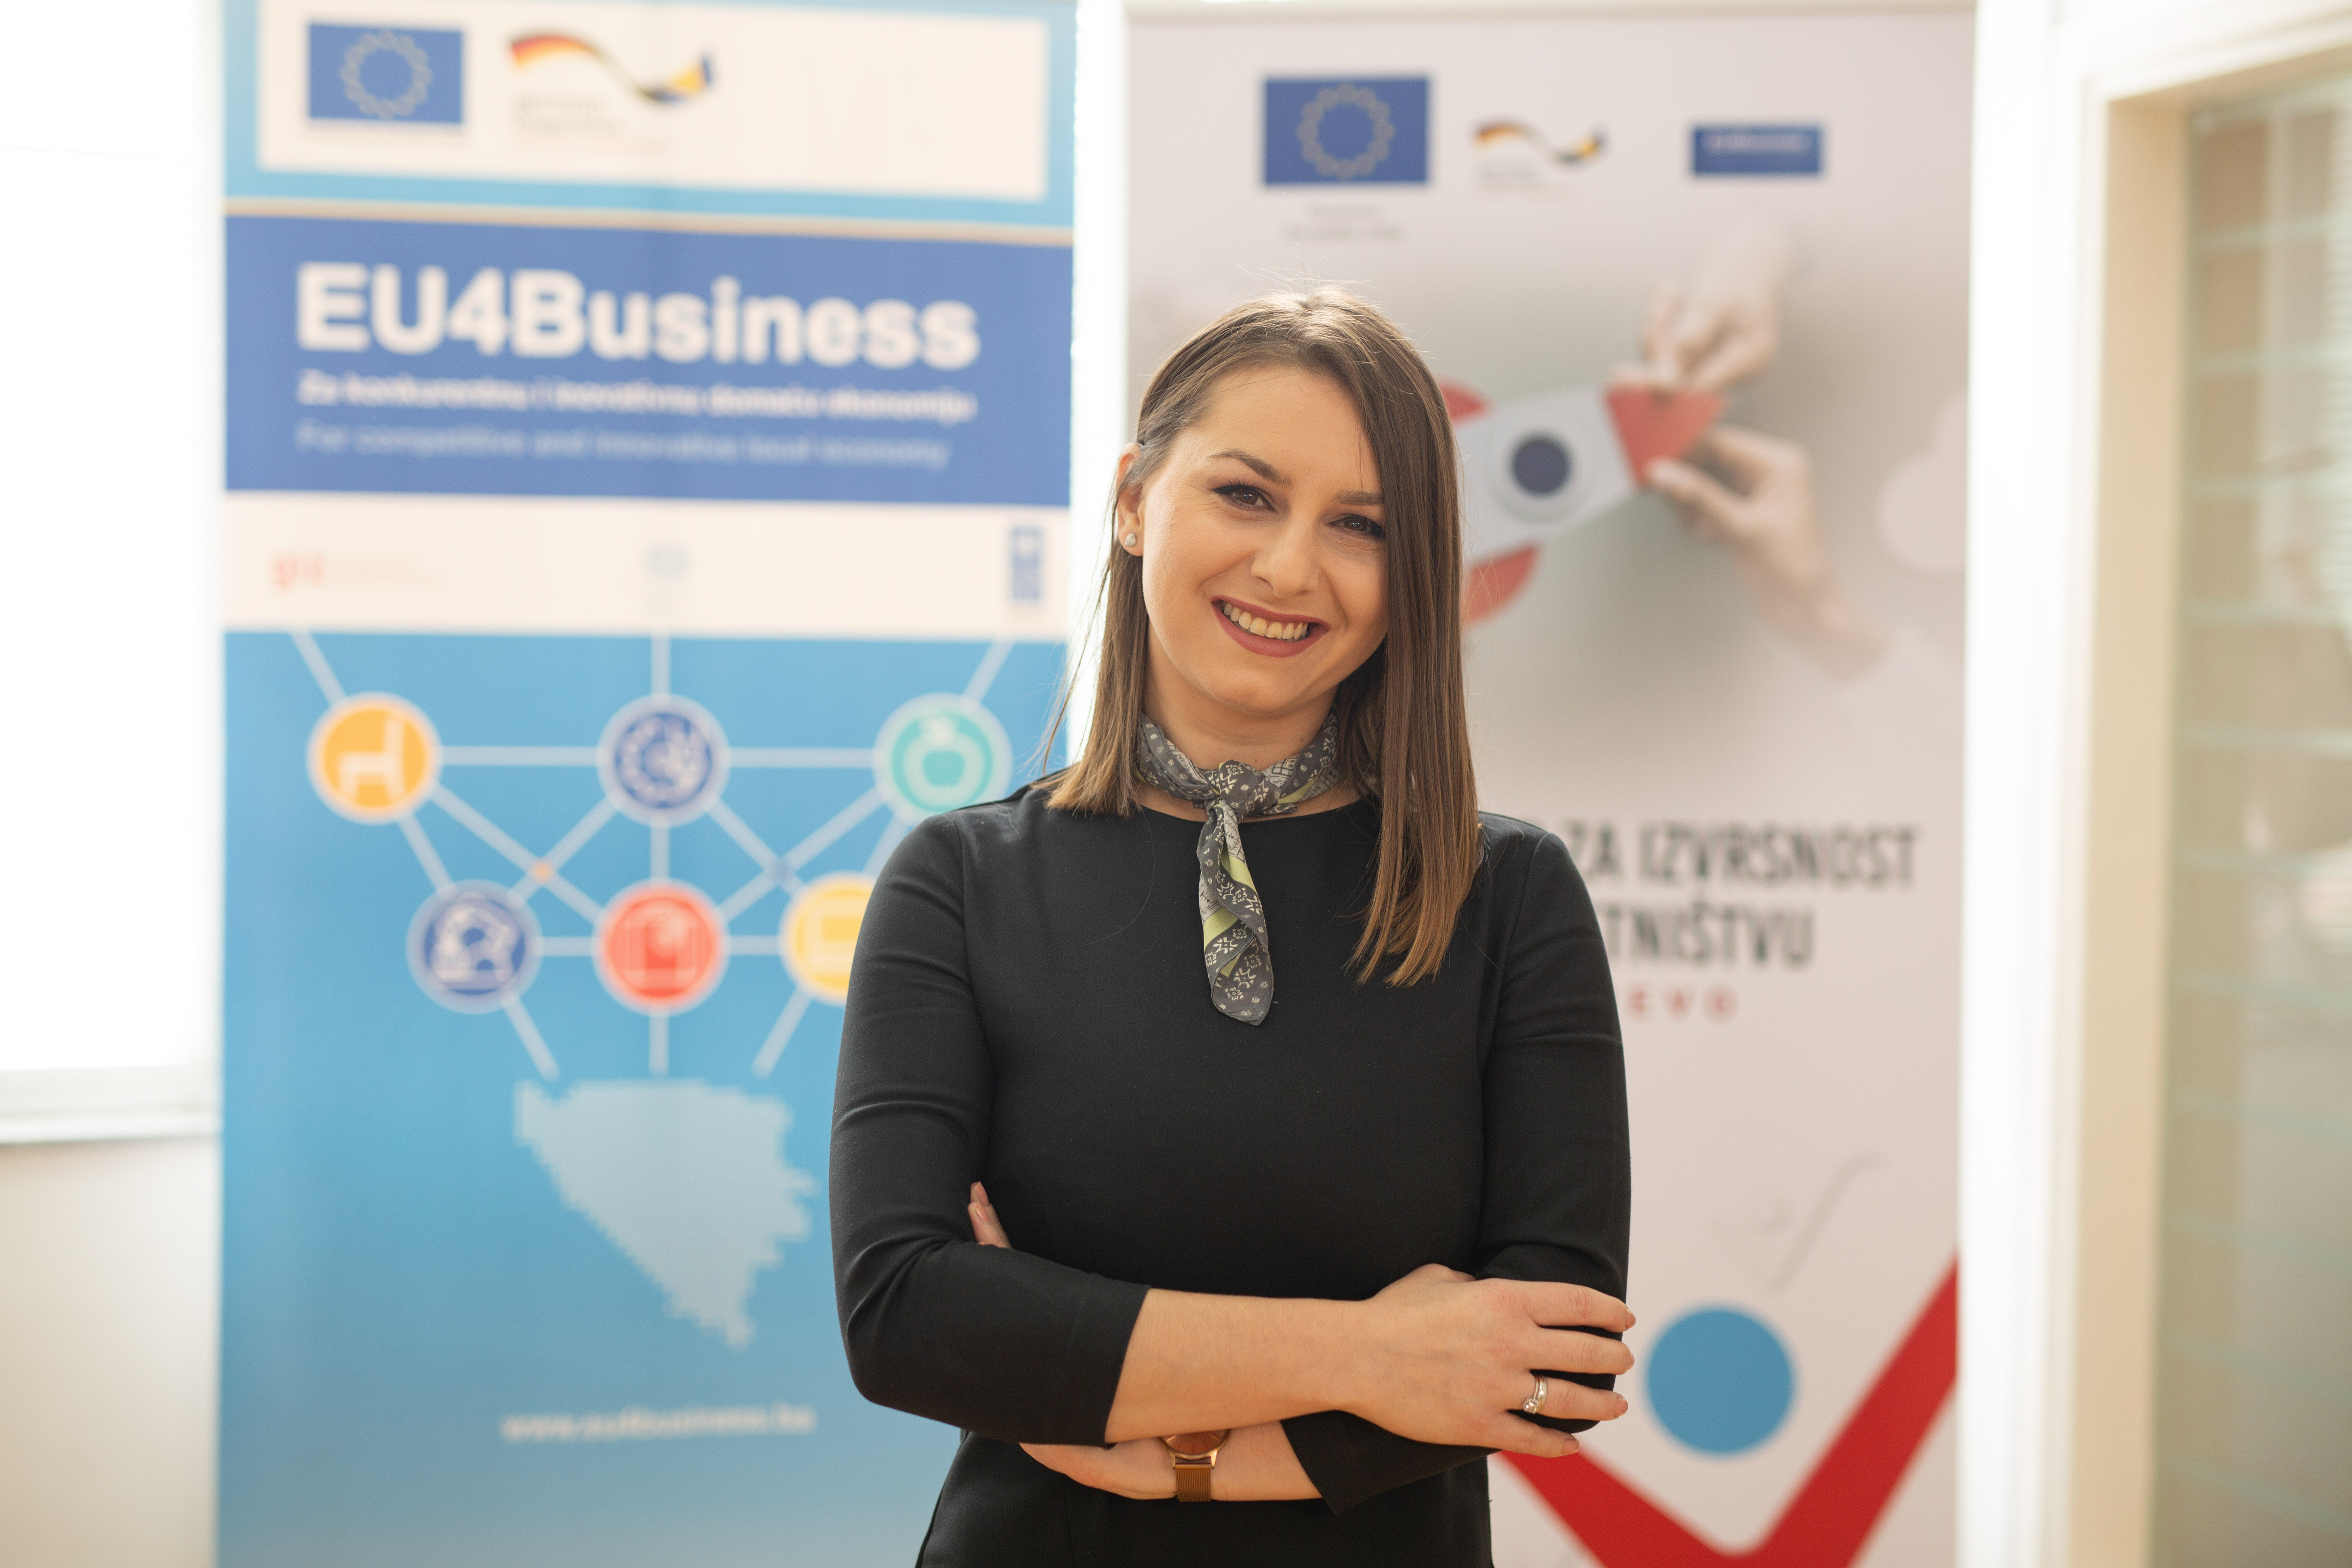 EU4Business uspješne preduzetničke priče: Ajla Kasapović pokrenula platformu za rezervaciju mjesta u restoranima